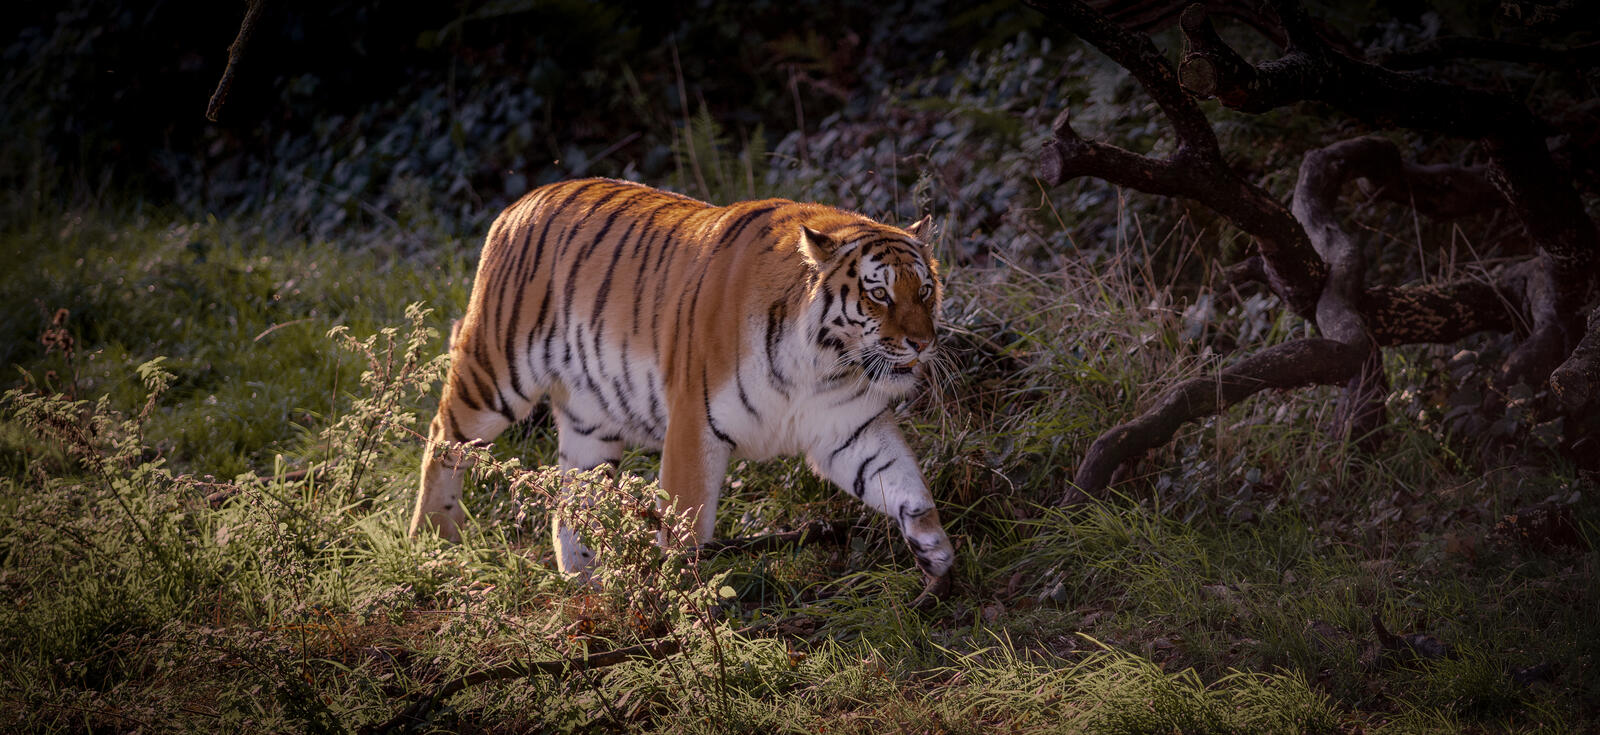 Бесплатное фото Скачать бесплатно амурский тигр, хищник заставку